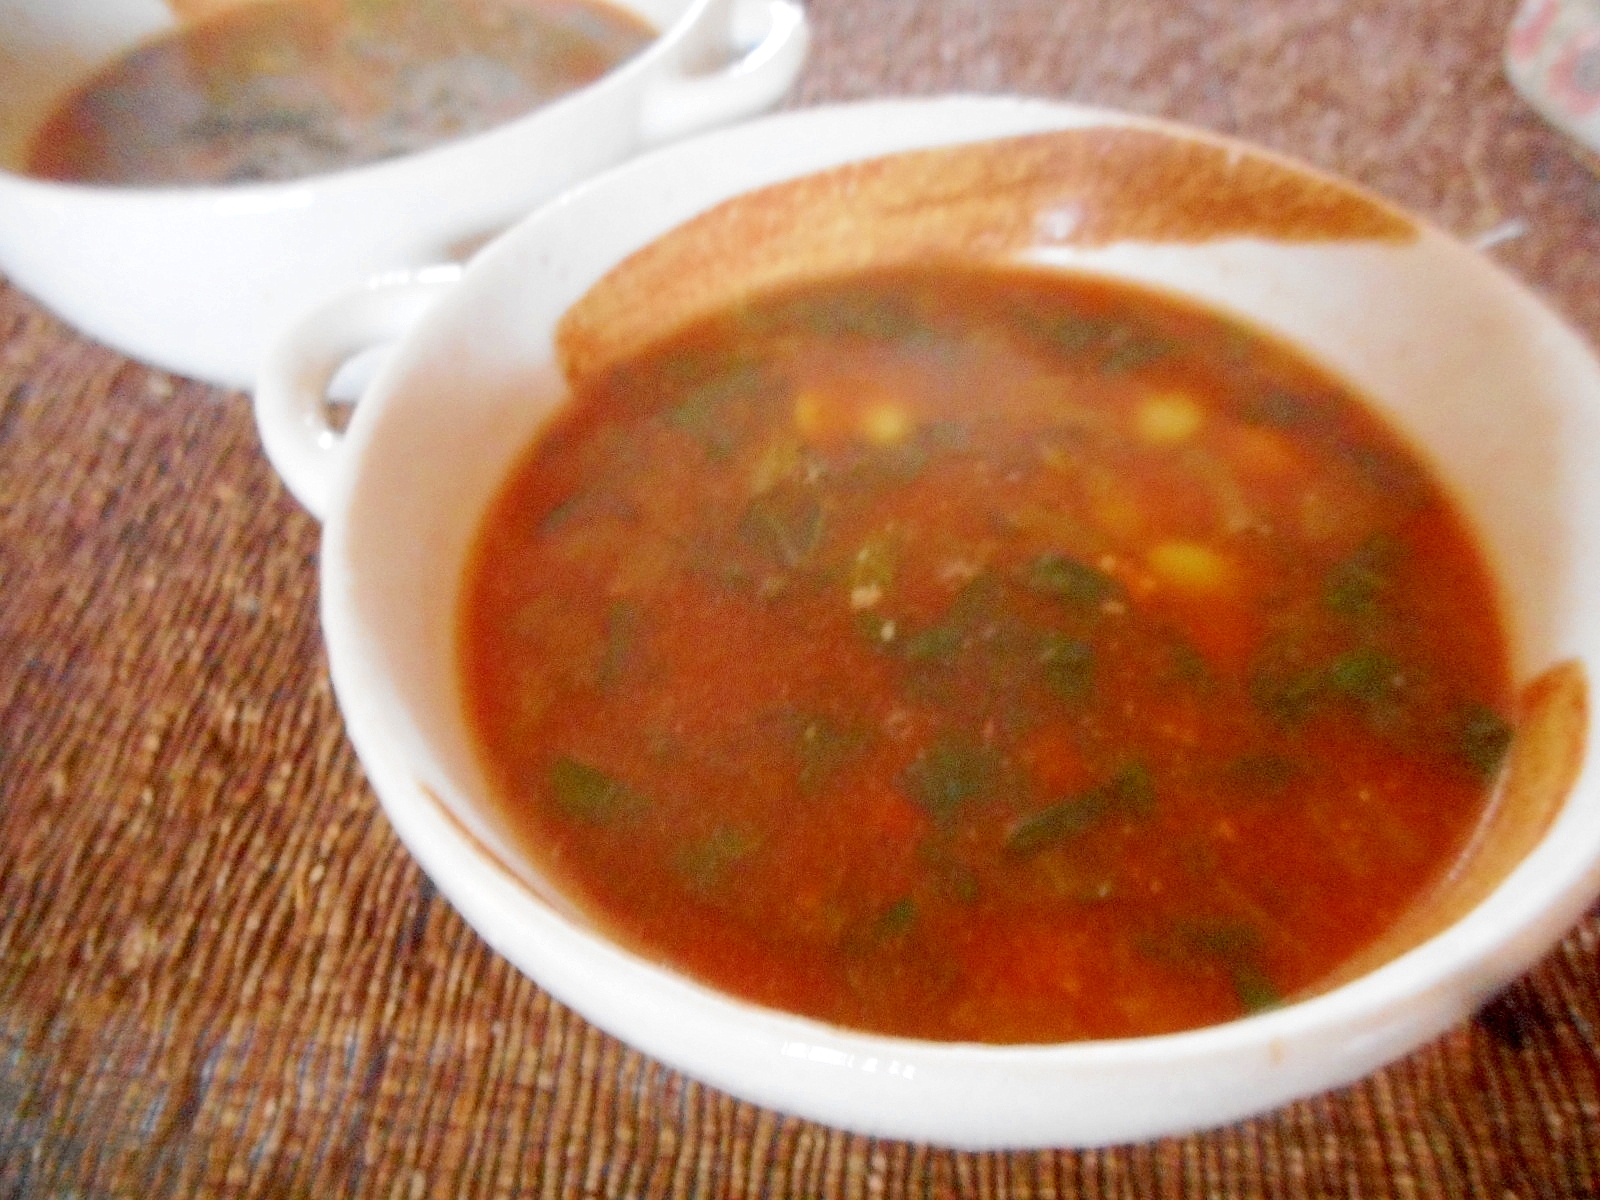 小松菜の野菜スープ